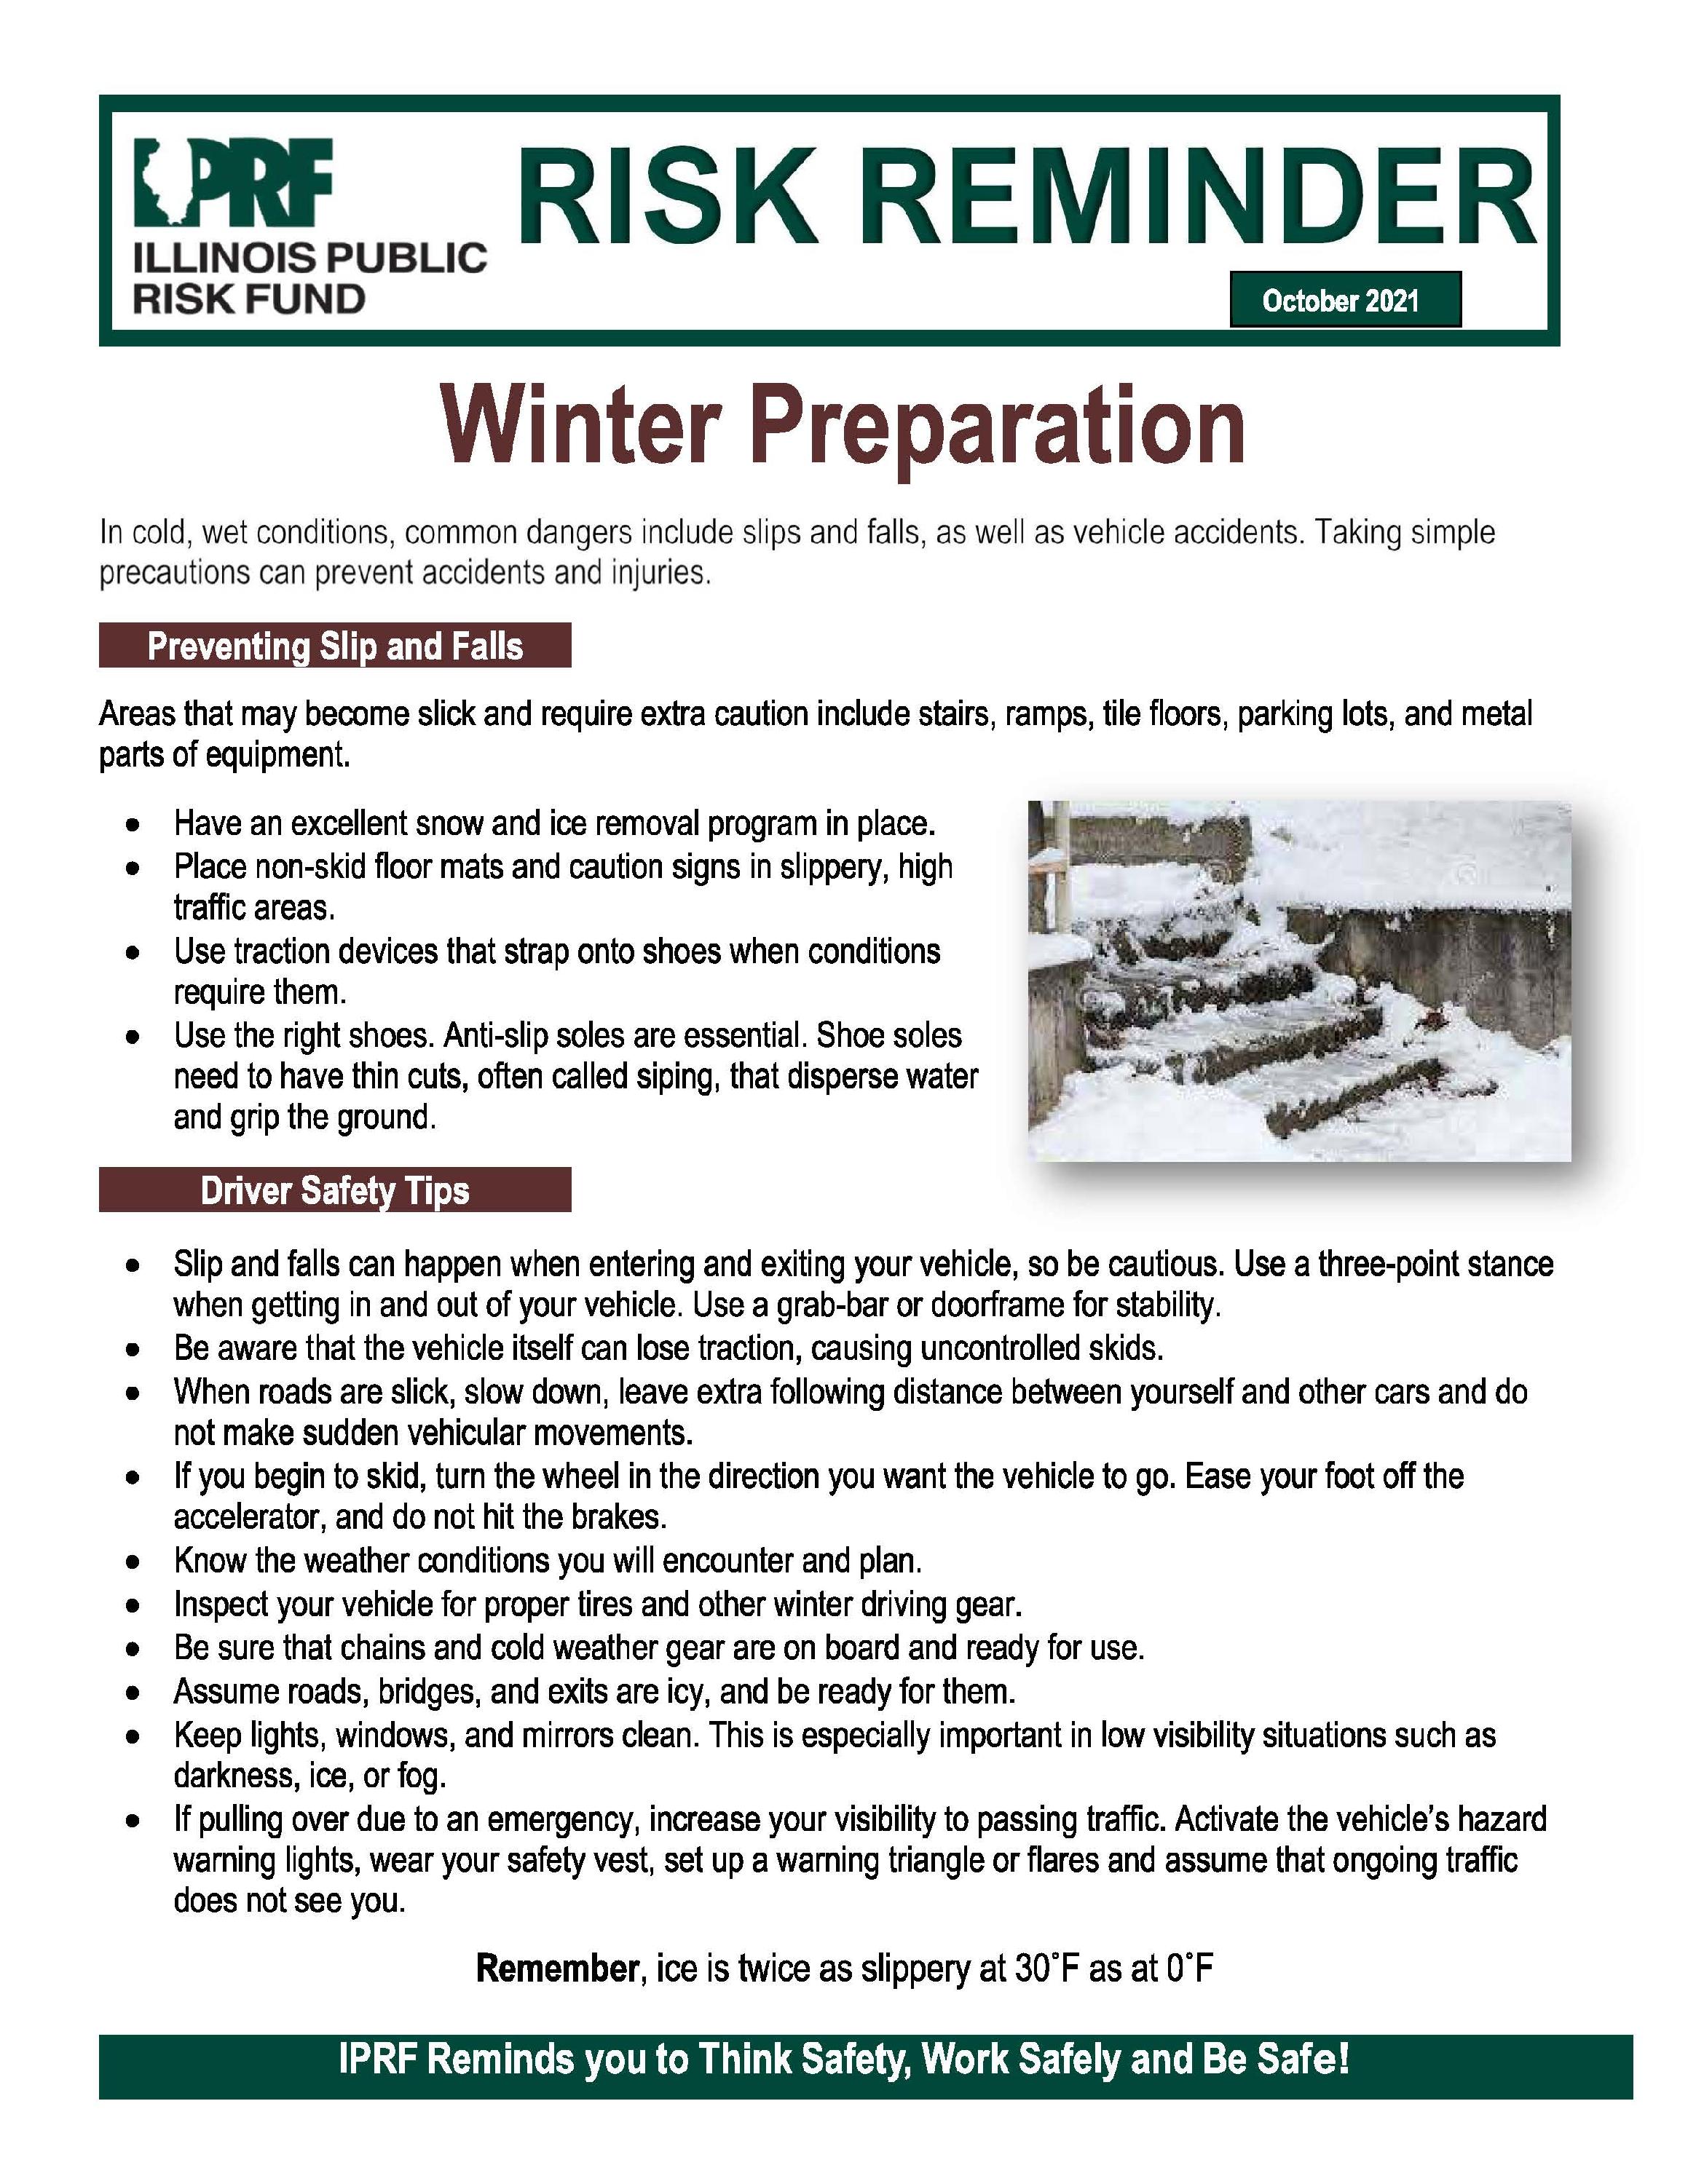 Risk Reminder - Winter Safety Tips